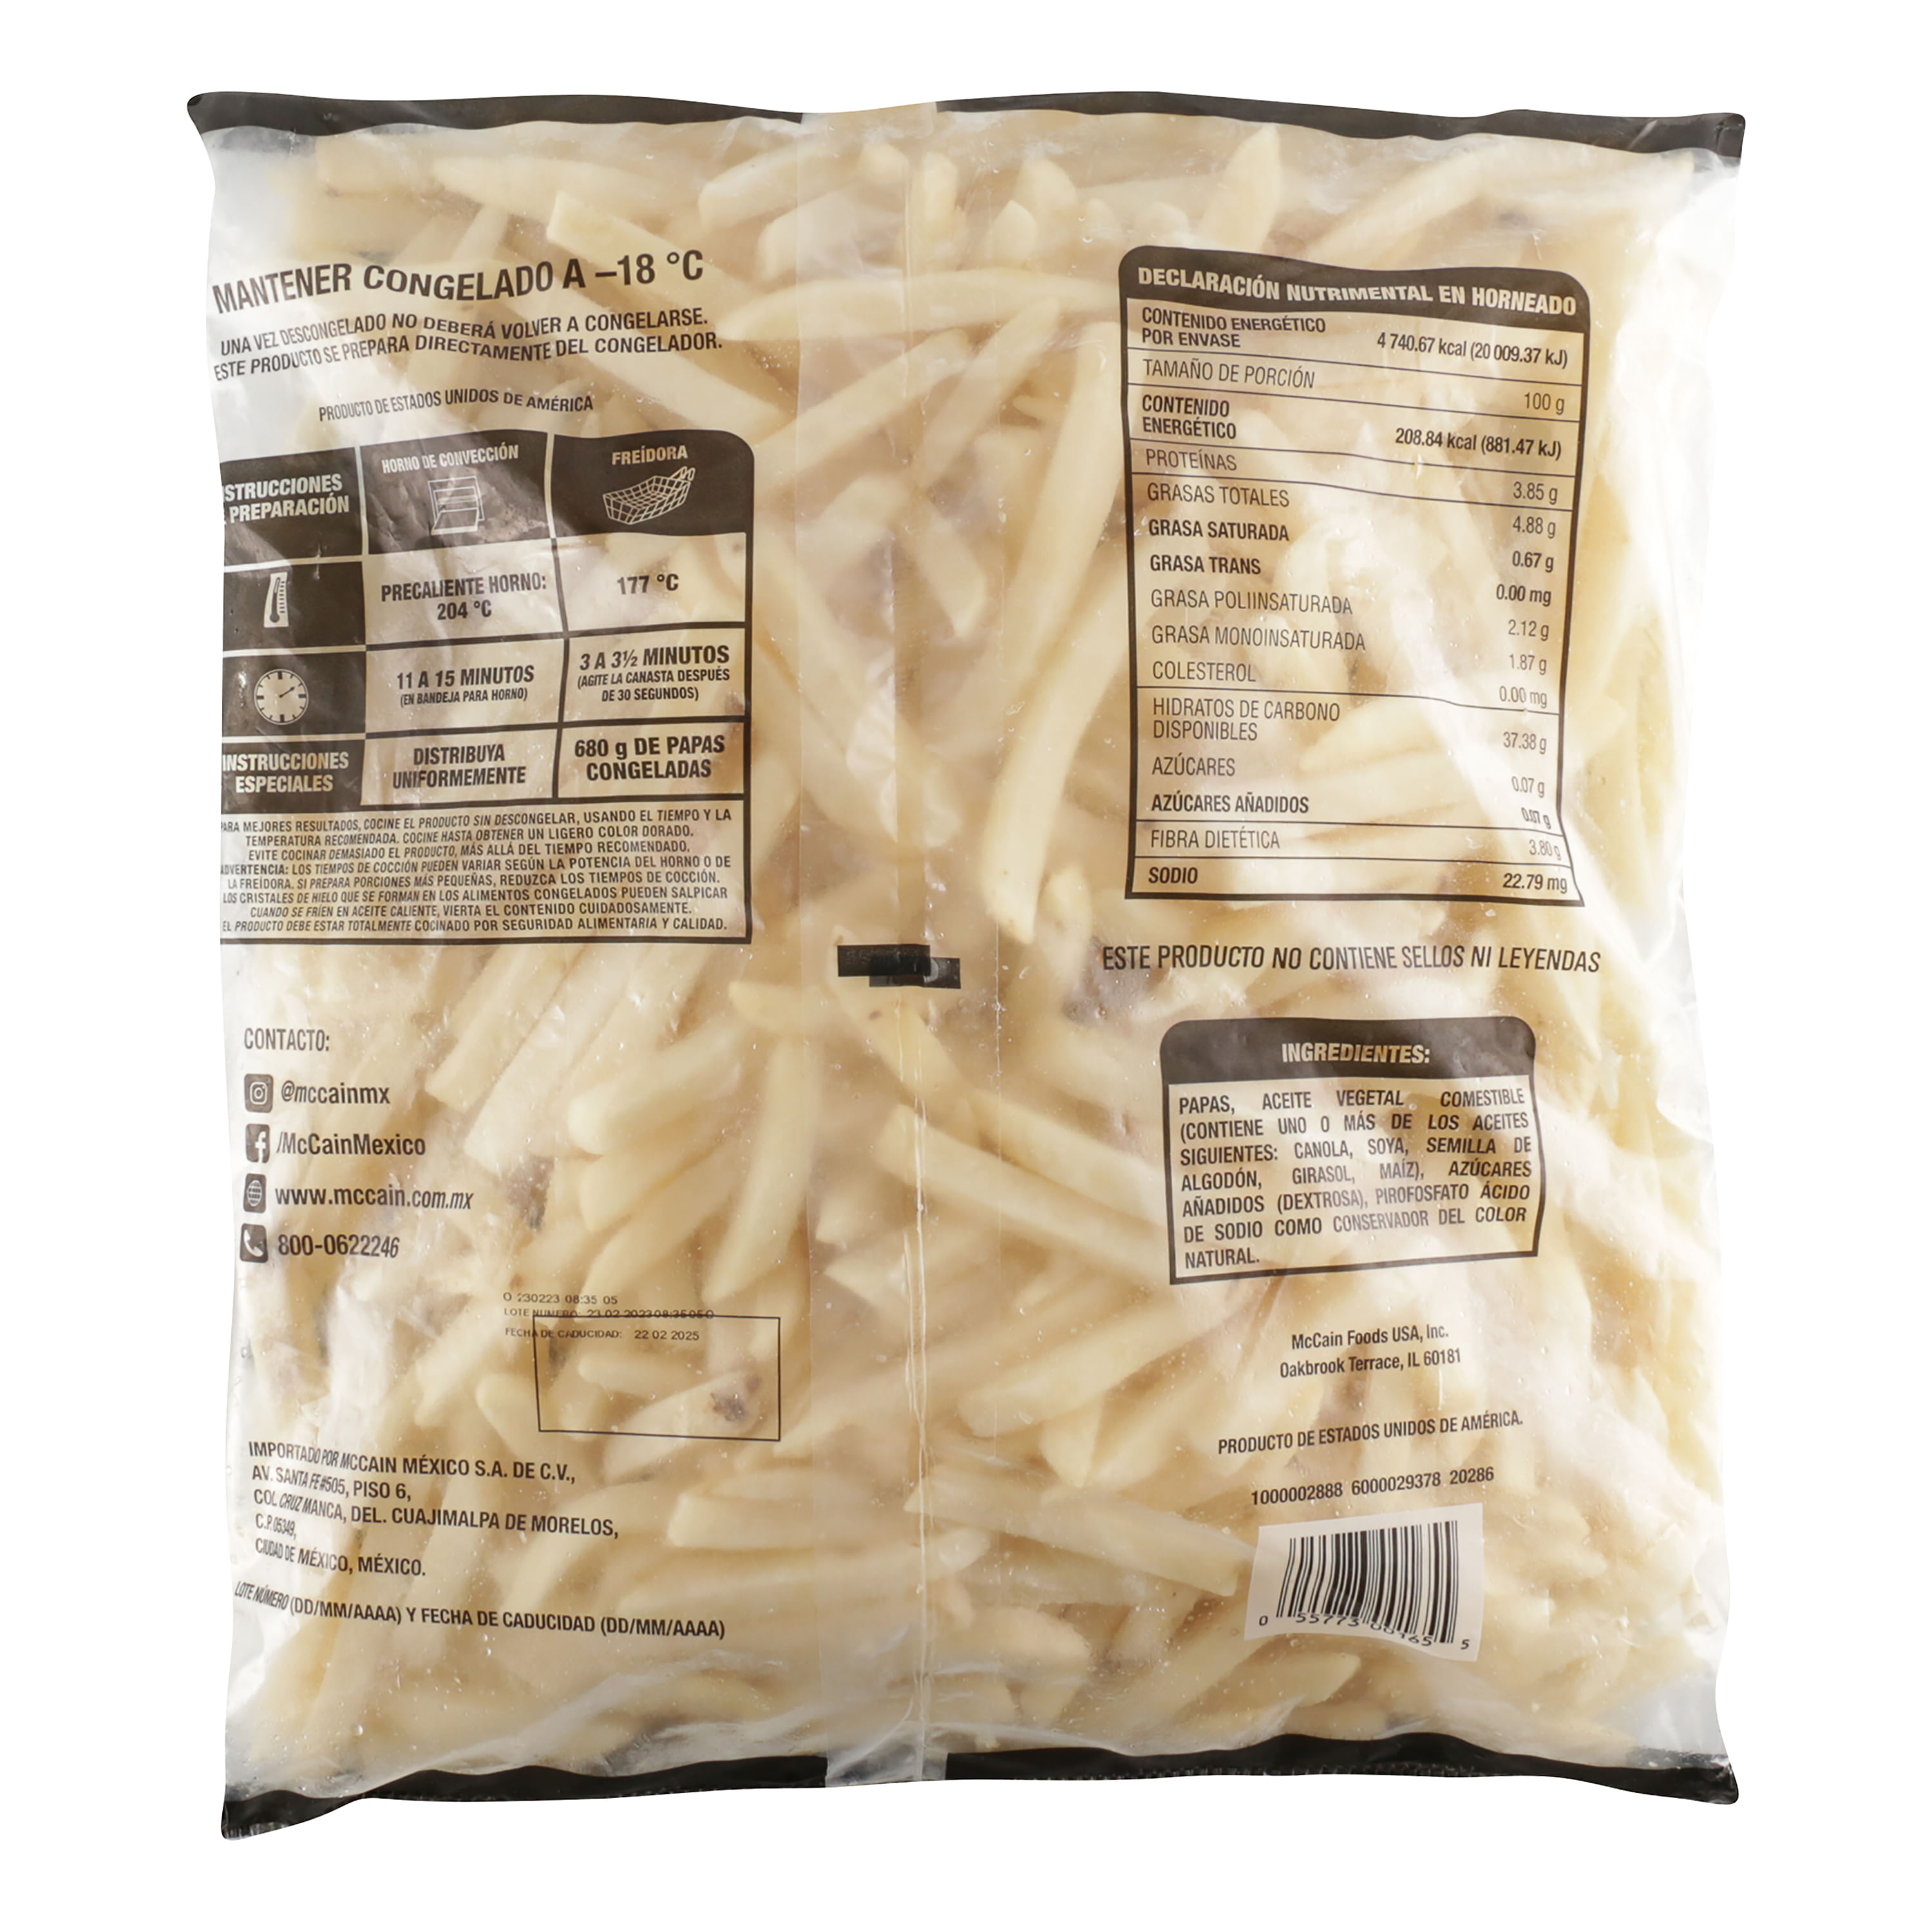 Forno Country patatas congeladas corte rústico bolsa 650 g · MC CAIN ·  Supermercado El Corte Inglés El Corte Inglés